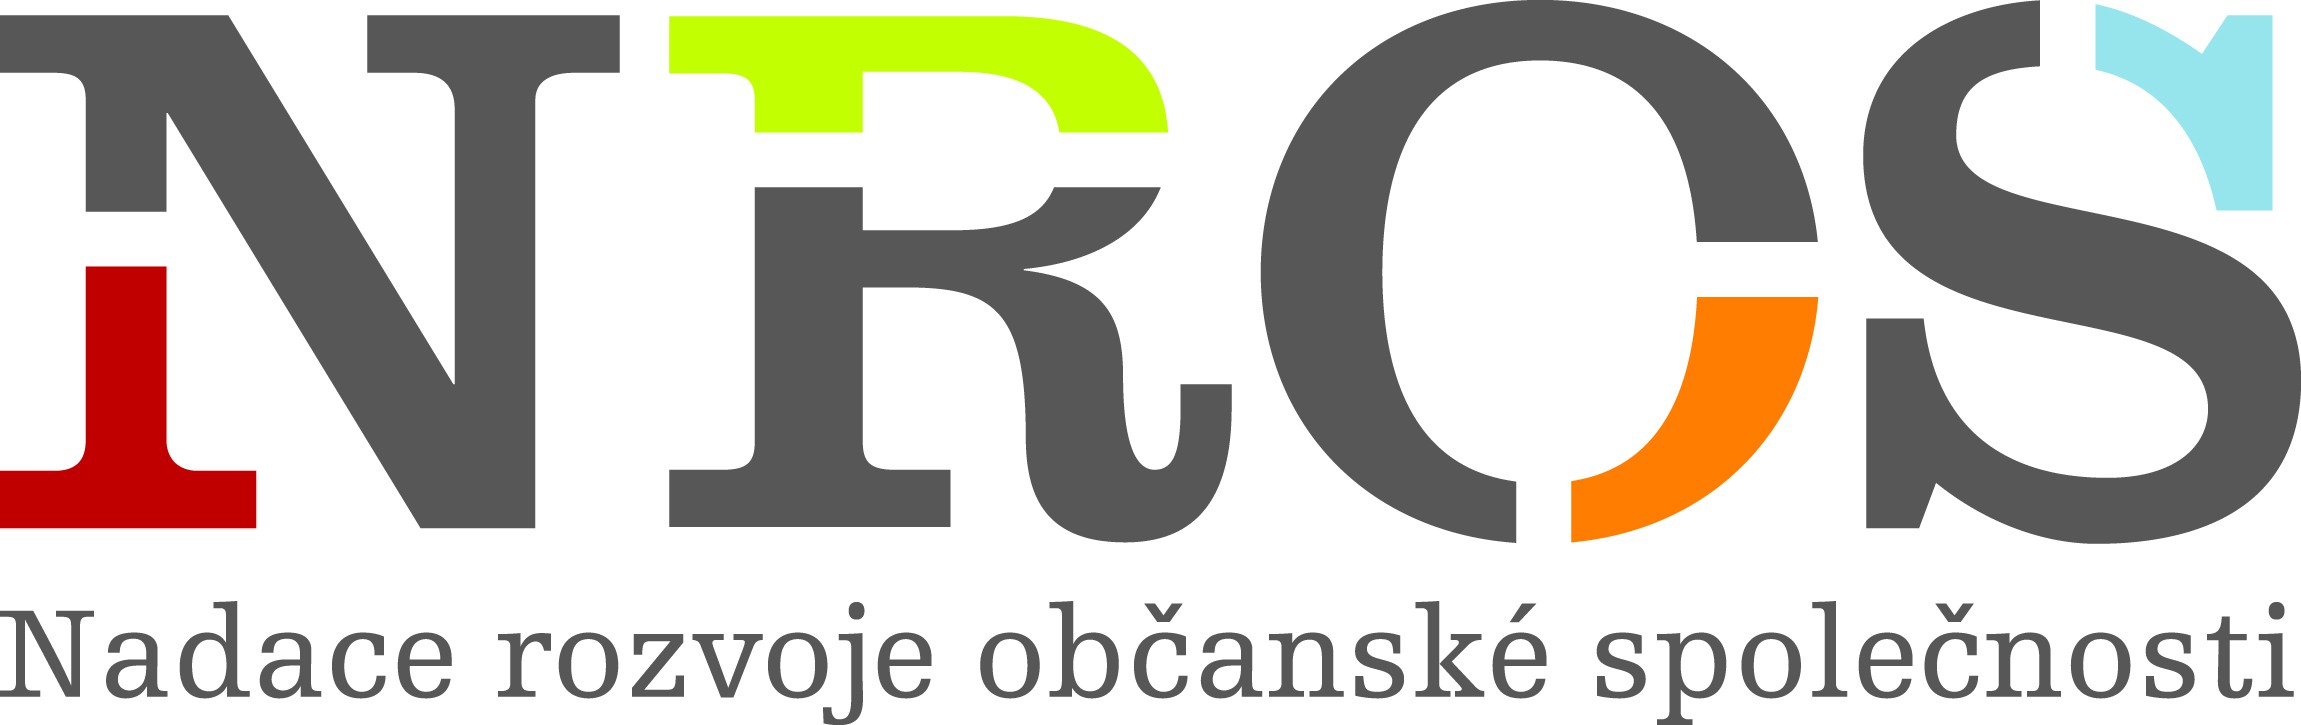 nros_cmyk_logo.jpg